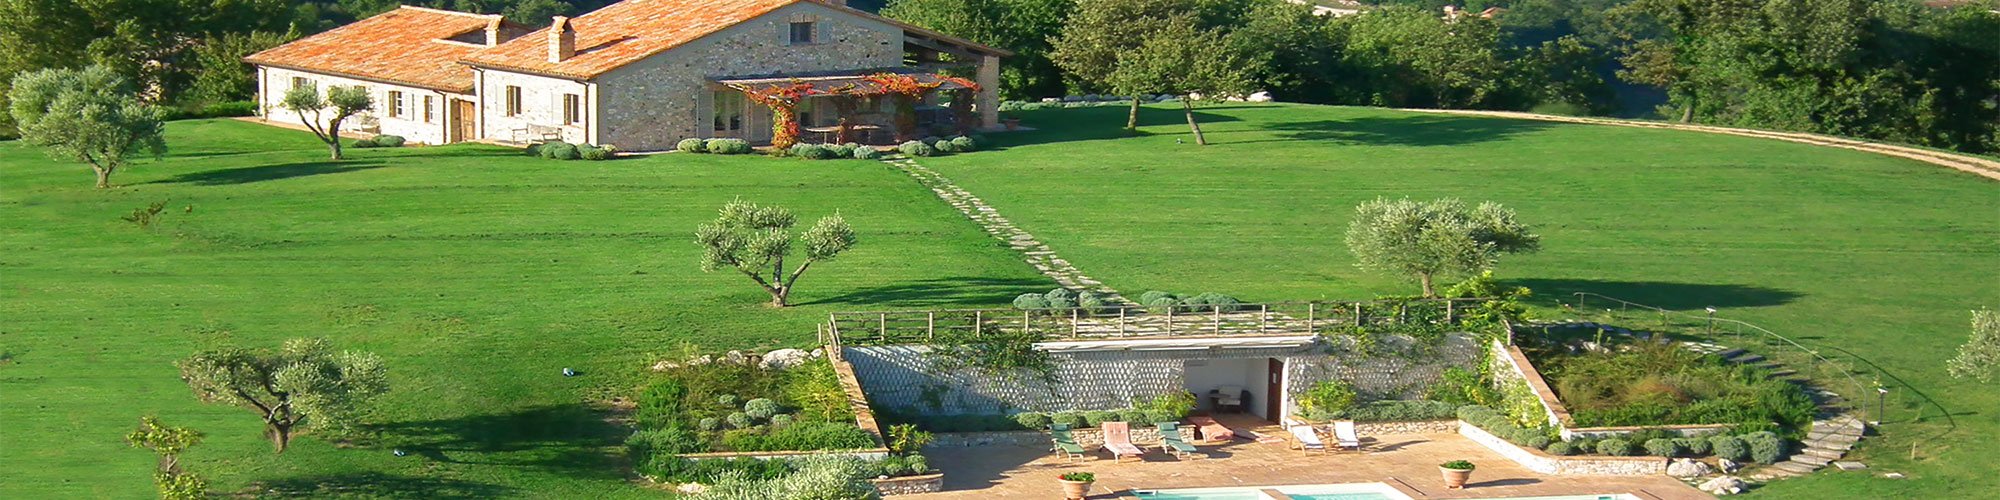 Villa Campo Rinaldo in Umbria - Aereal View